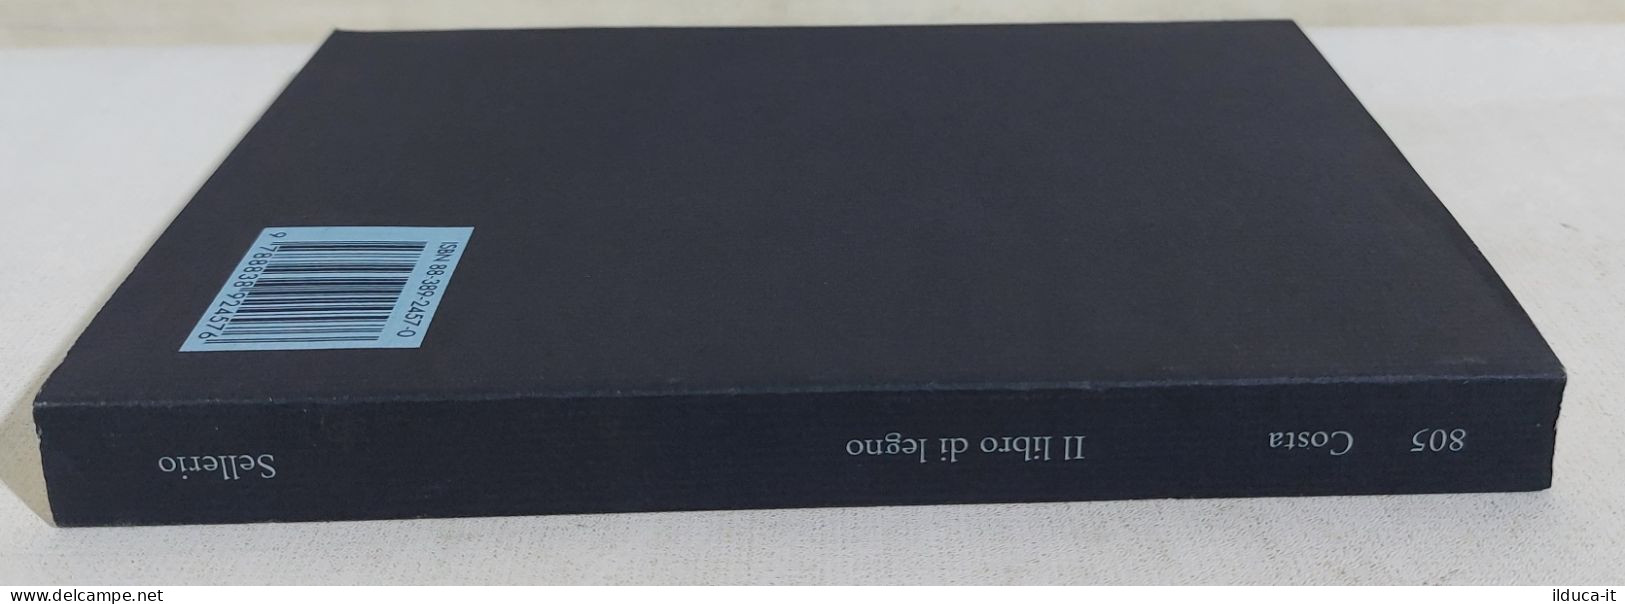 49349 V Gian Mauro Costa - Il Libro Di Legno - Sellerio 2010 - Tales & Short Stories